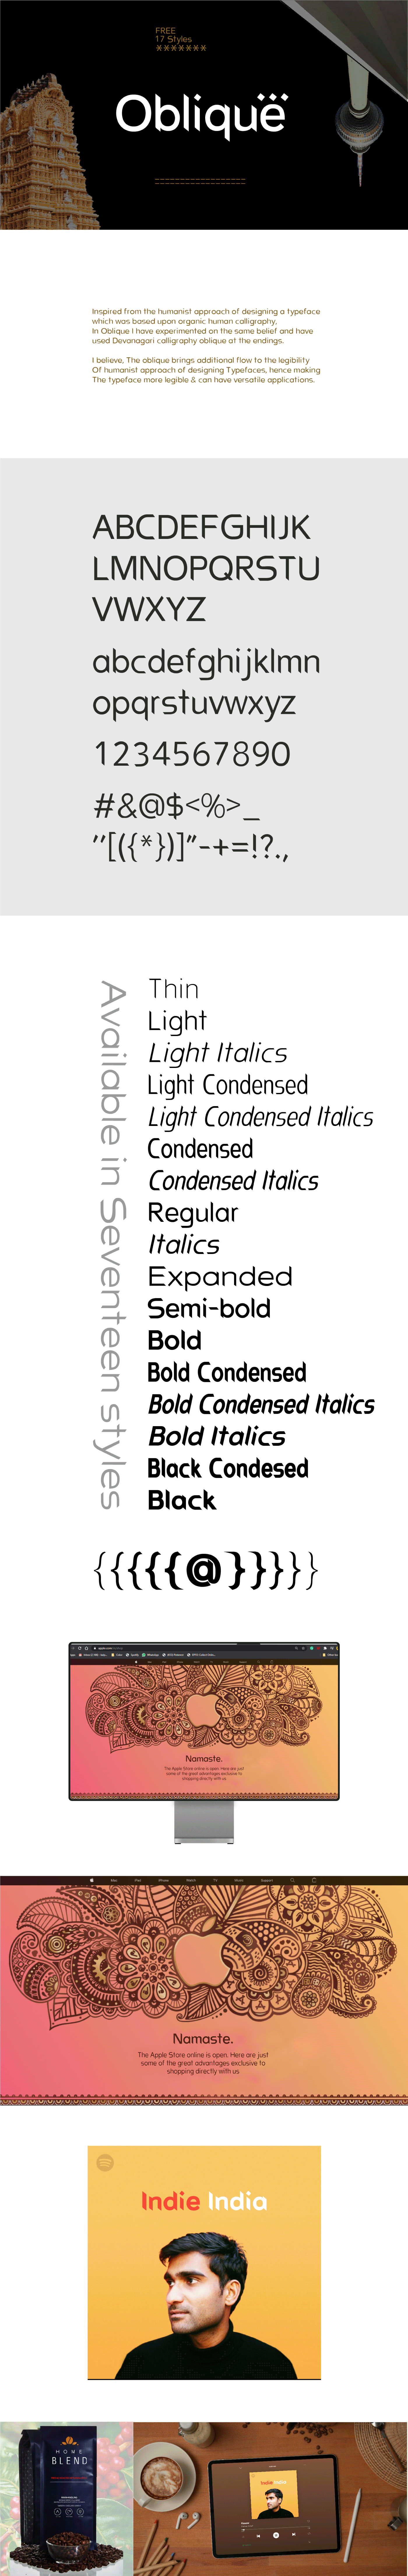 art display font free Free font freebie logo sans serif serif type Typeface